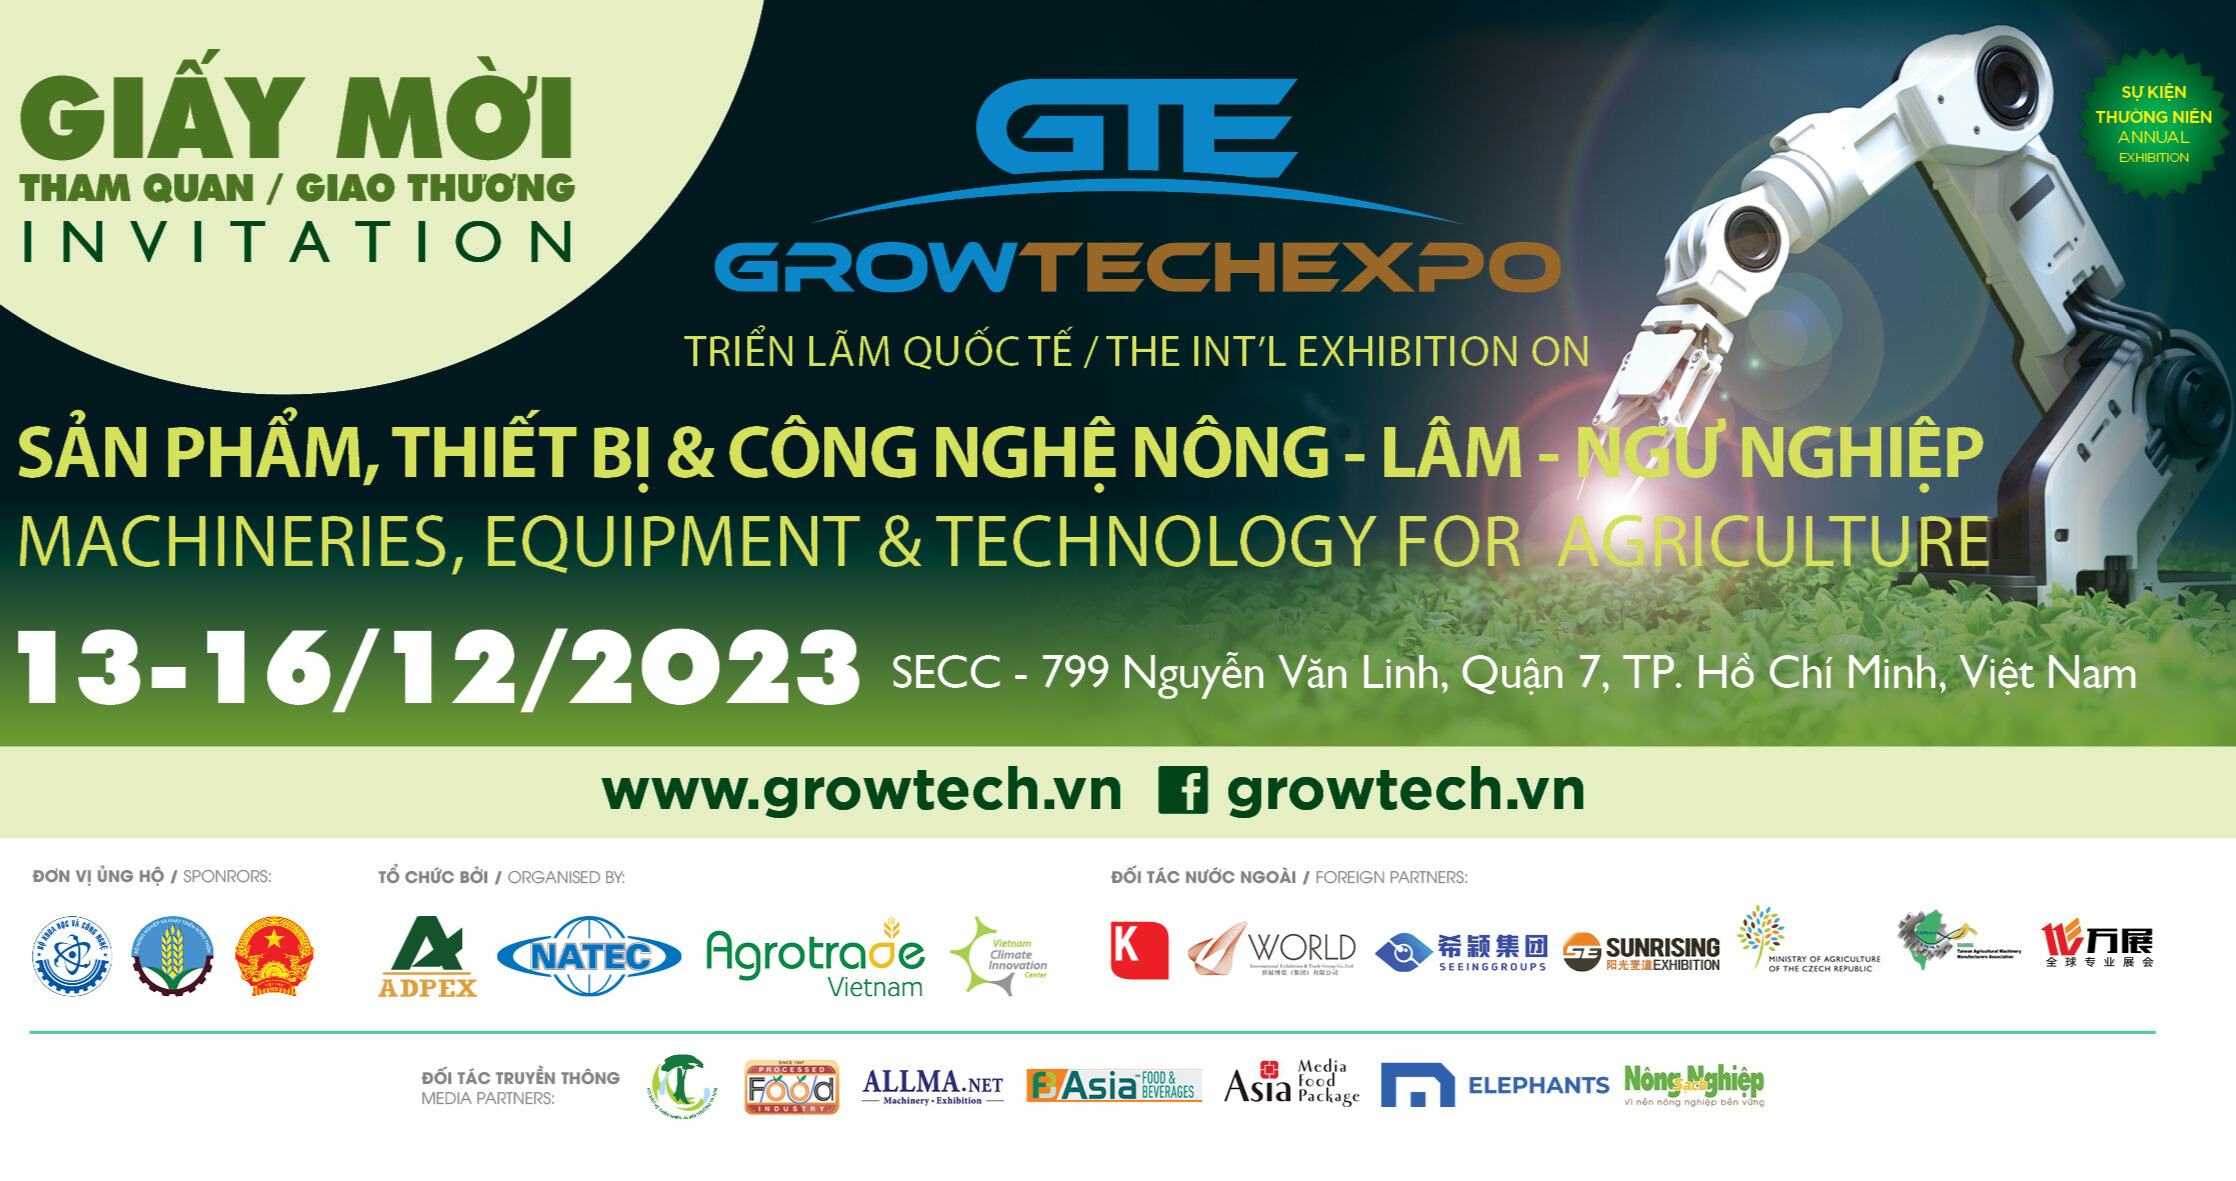 Growtech Vietnam 2023